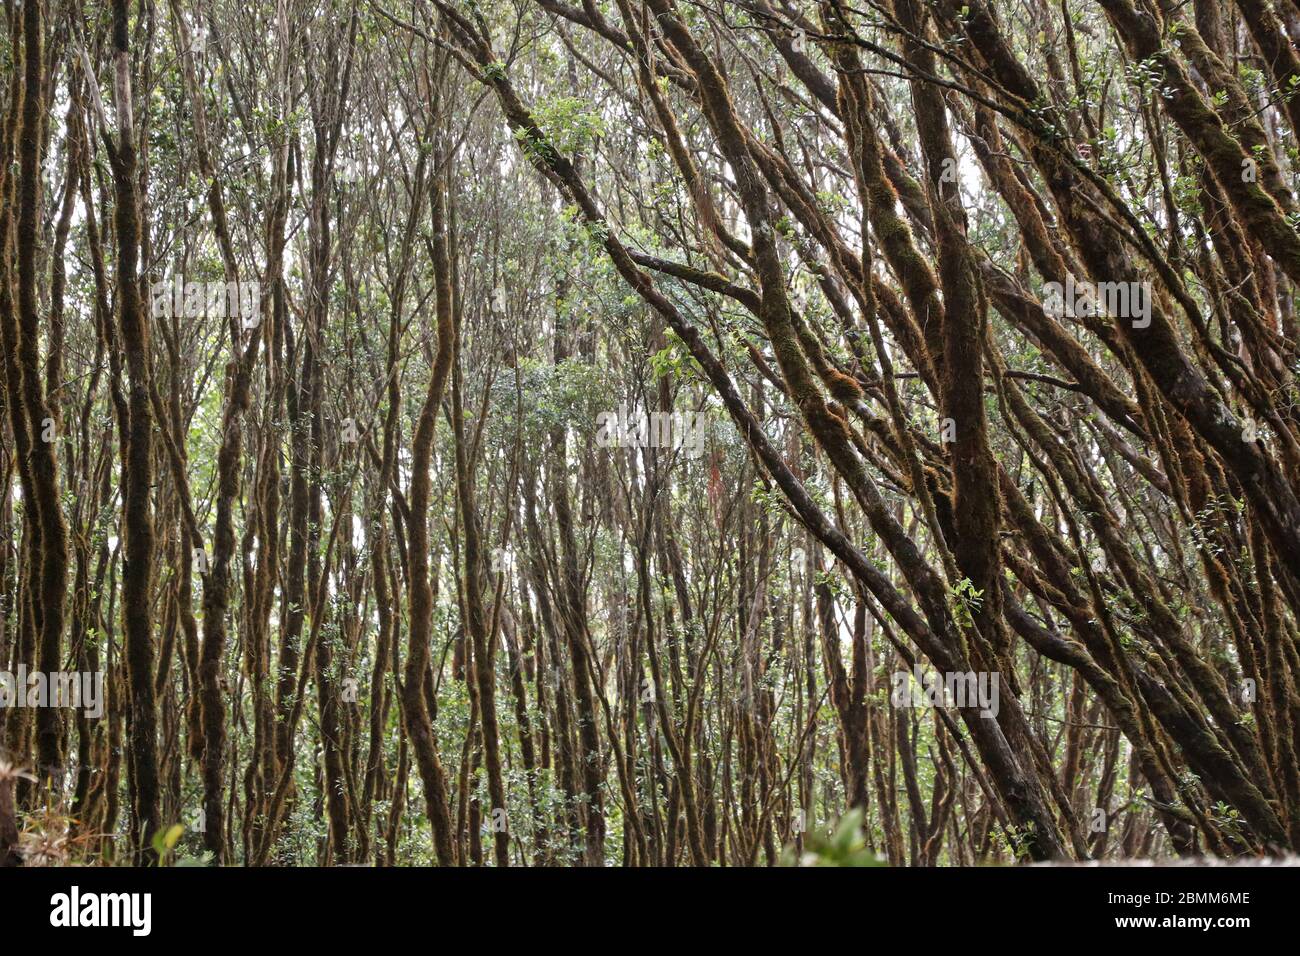 Regenerating rainforest stand, Kauai, Hawaii Stock Photo